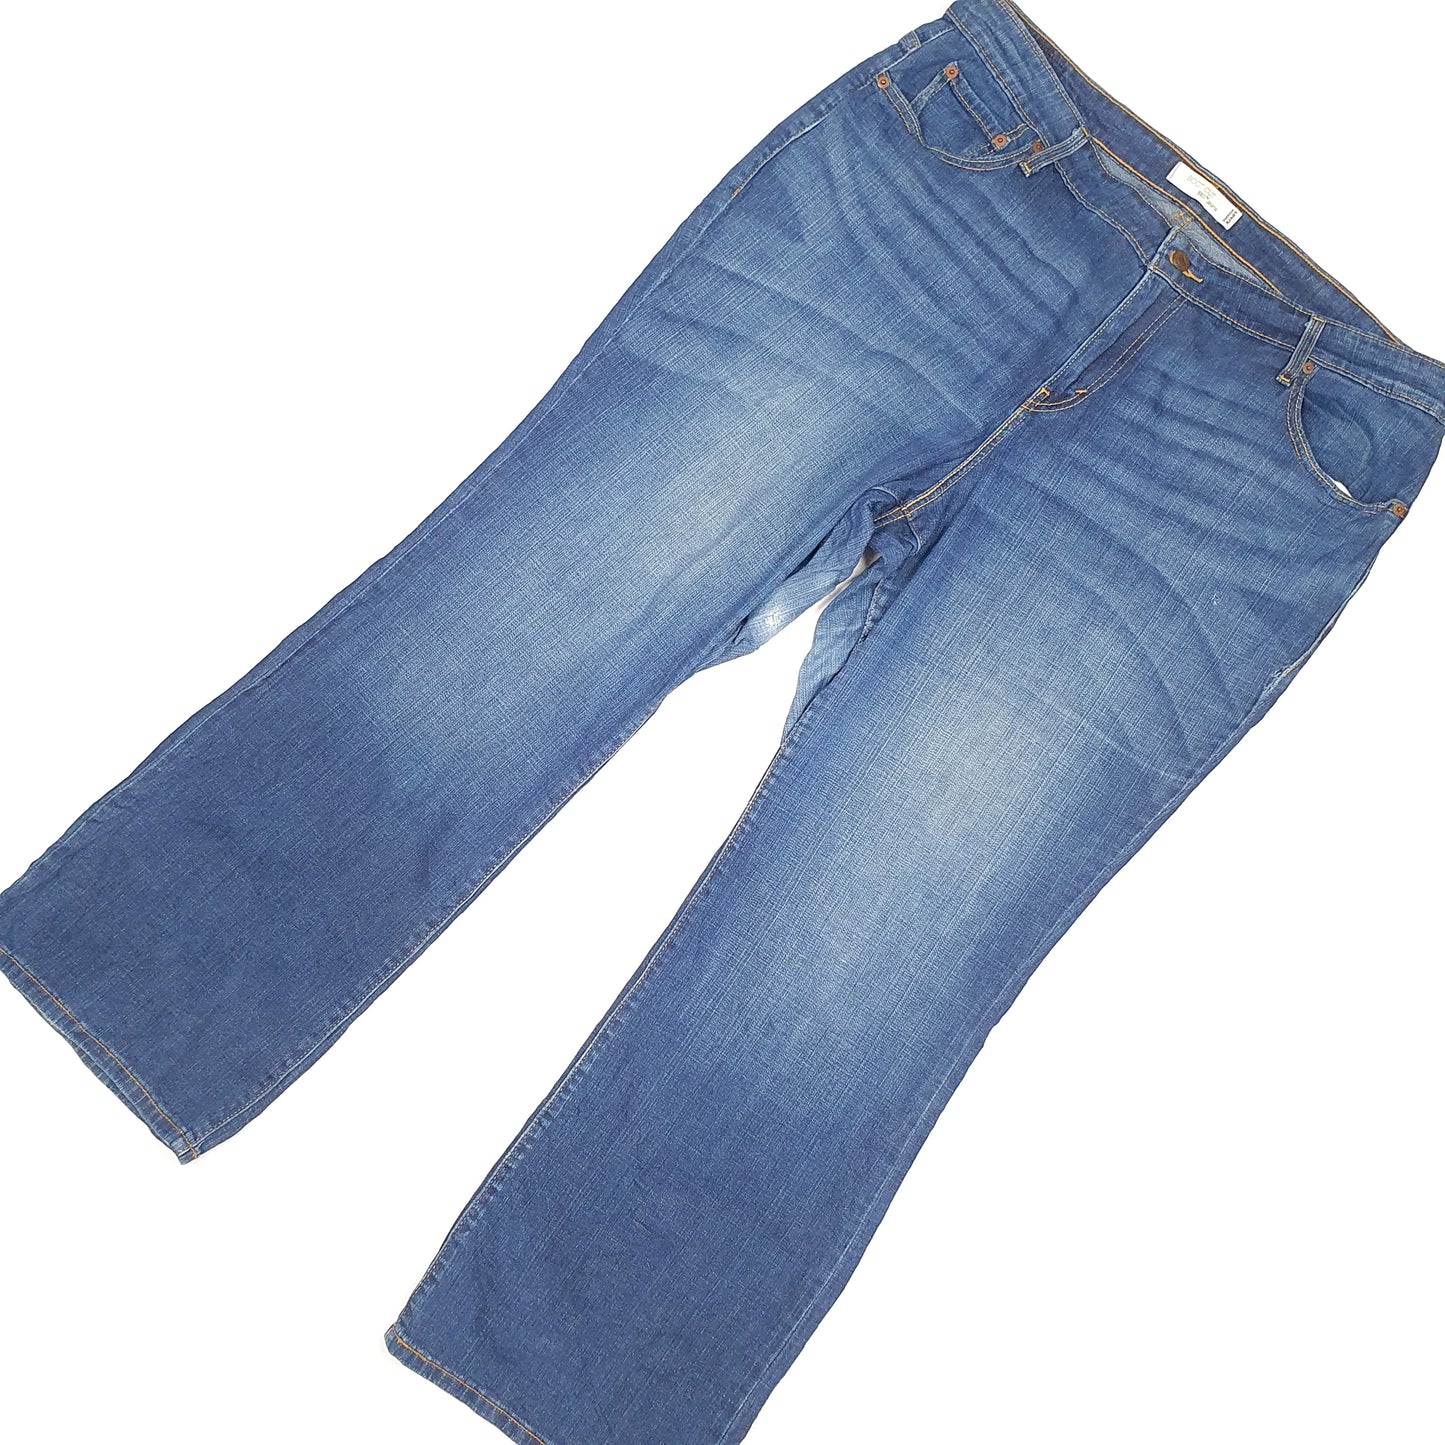 Levis 580 Bootcut Fit Jeans UK22